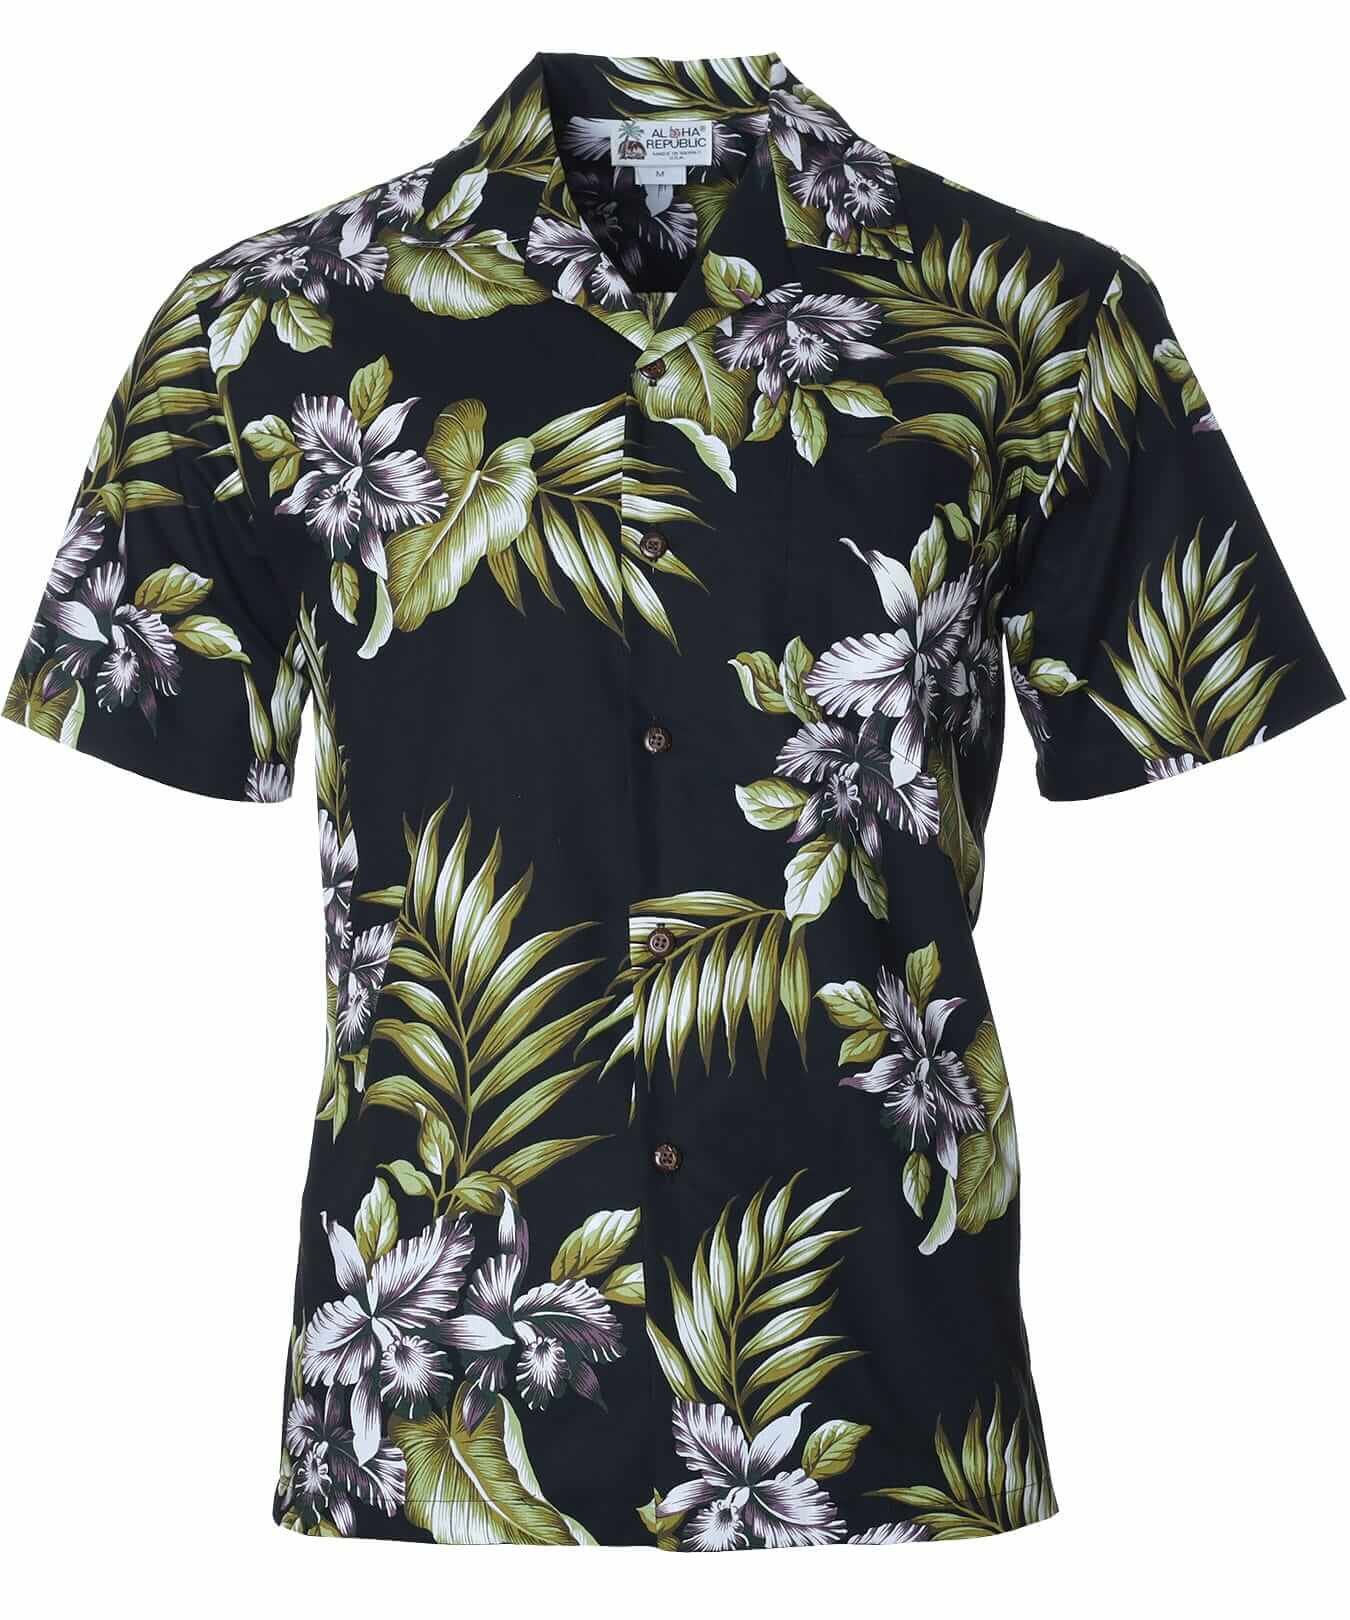 Orchids Cotton Men's Aloha Shirt Black